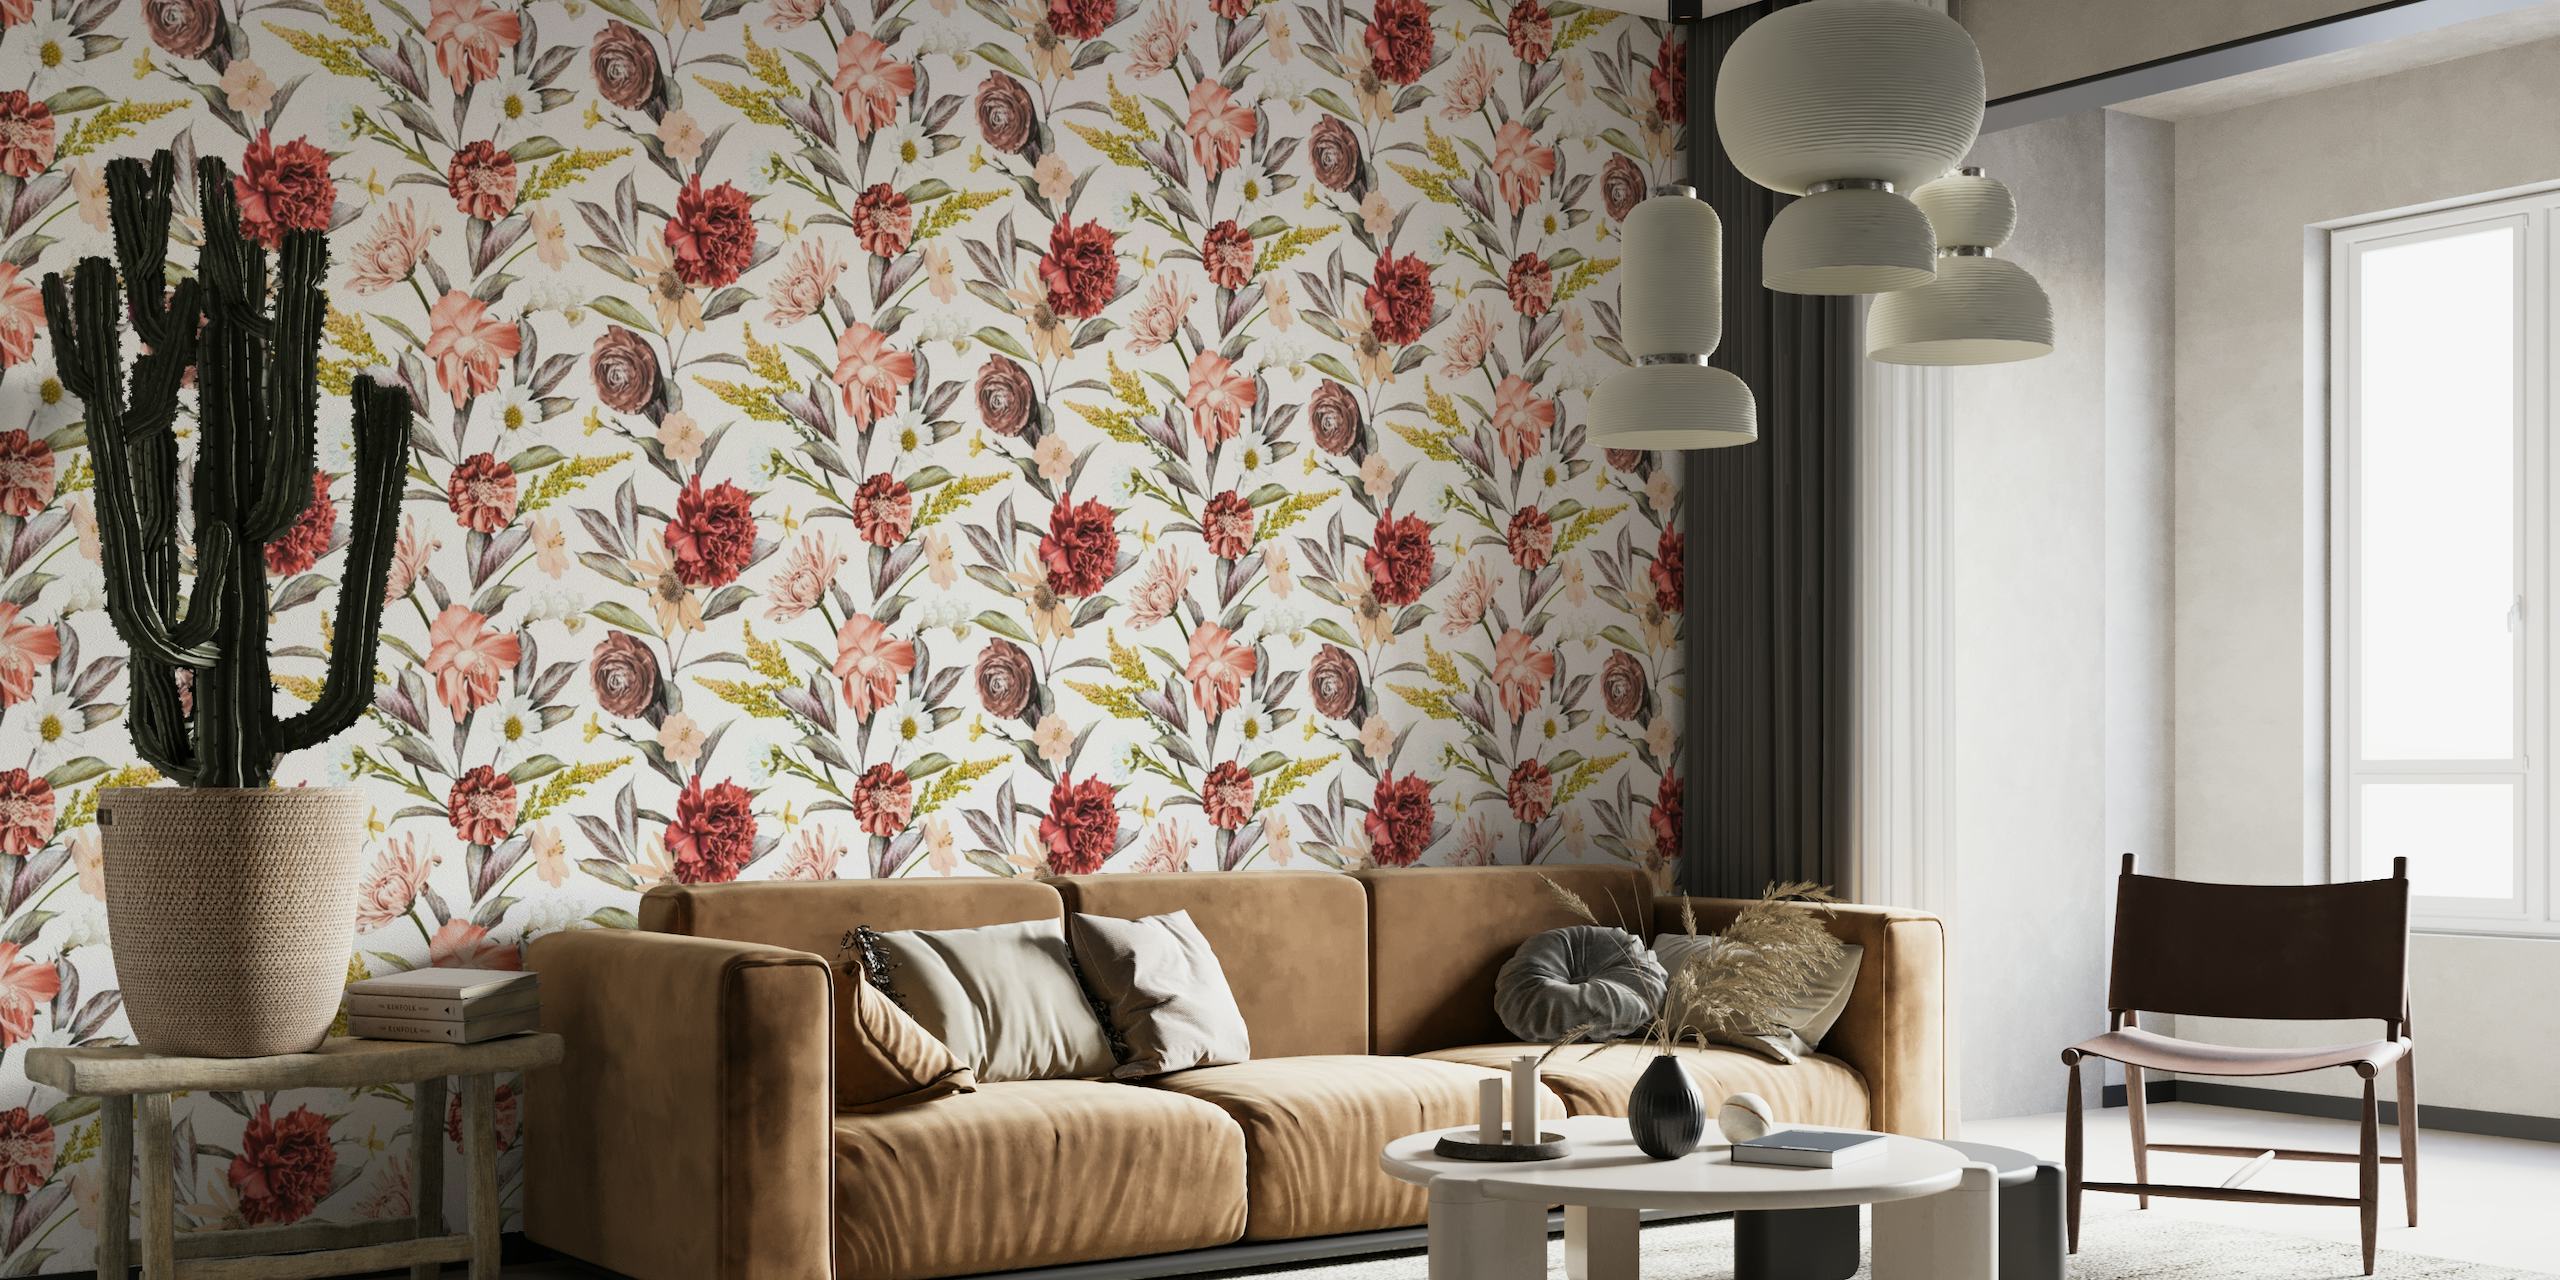 Elegantna zidna slika s cvjetnim tapiserijama u baroknom stilu s bujnim cvijećem i lišćem.